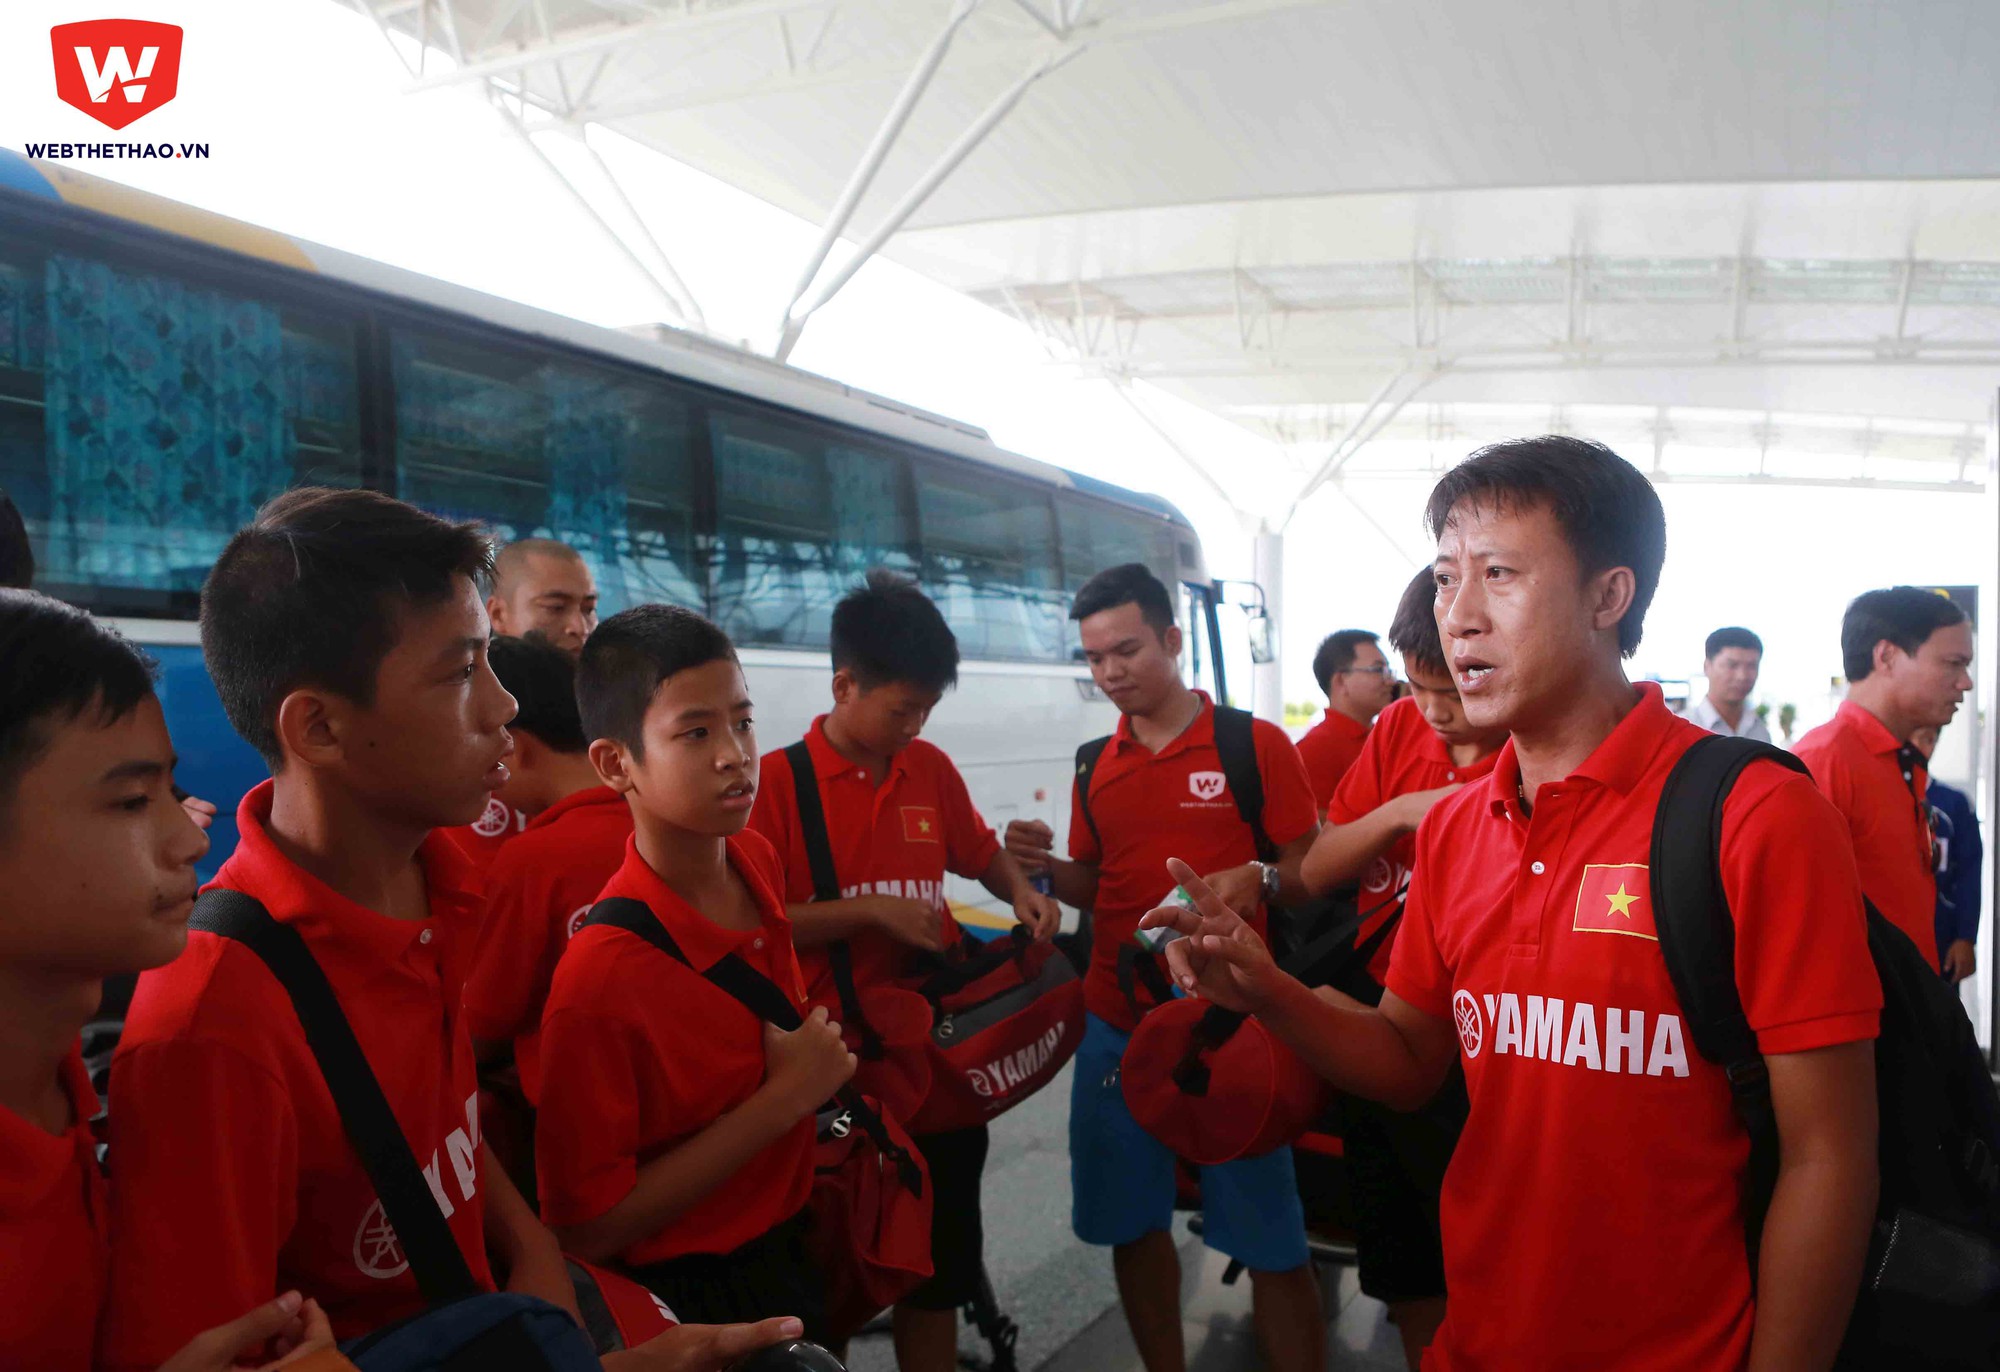 HLV Nguyễn Thành Công điểm danh khi toàn đội tới sân bay. Đây là hoạt động diễn ra khá thường xuyên trong suốt quá trình tập huấn vừa qua.